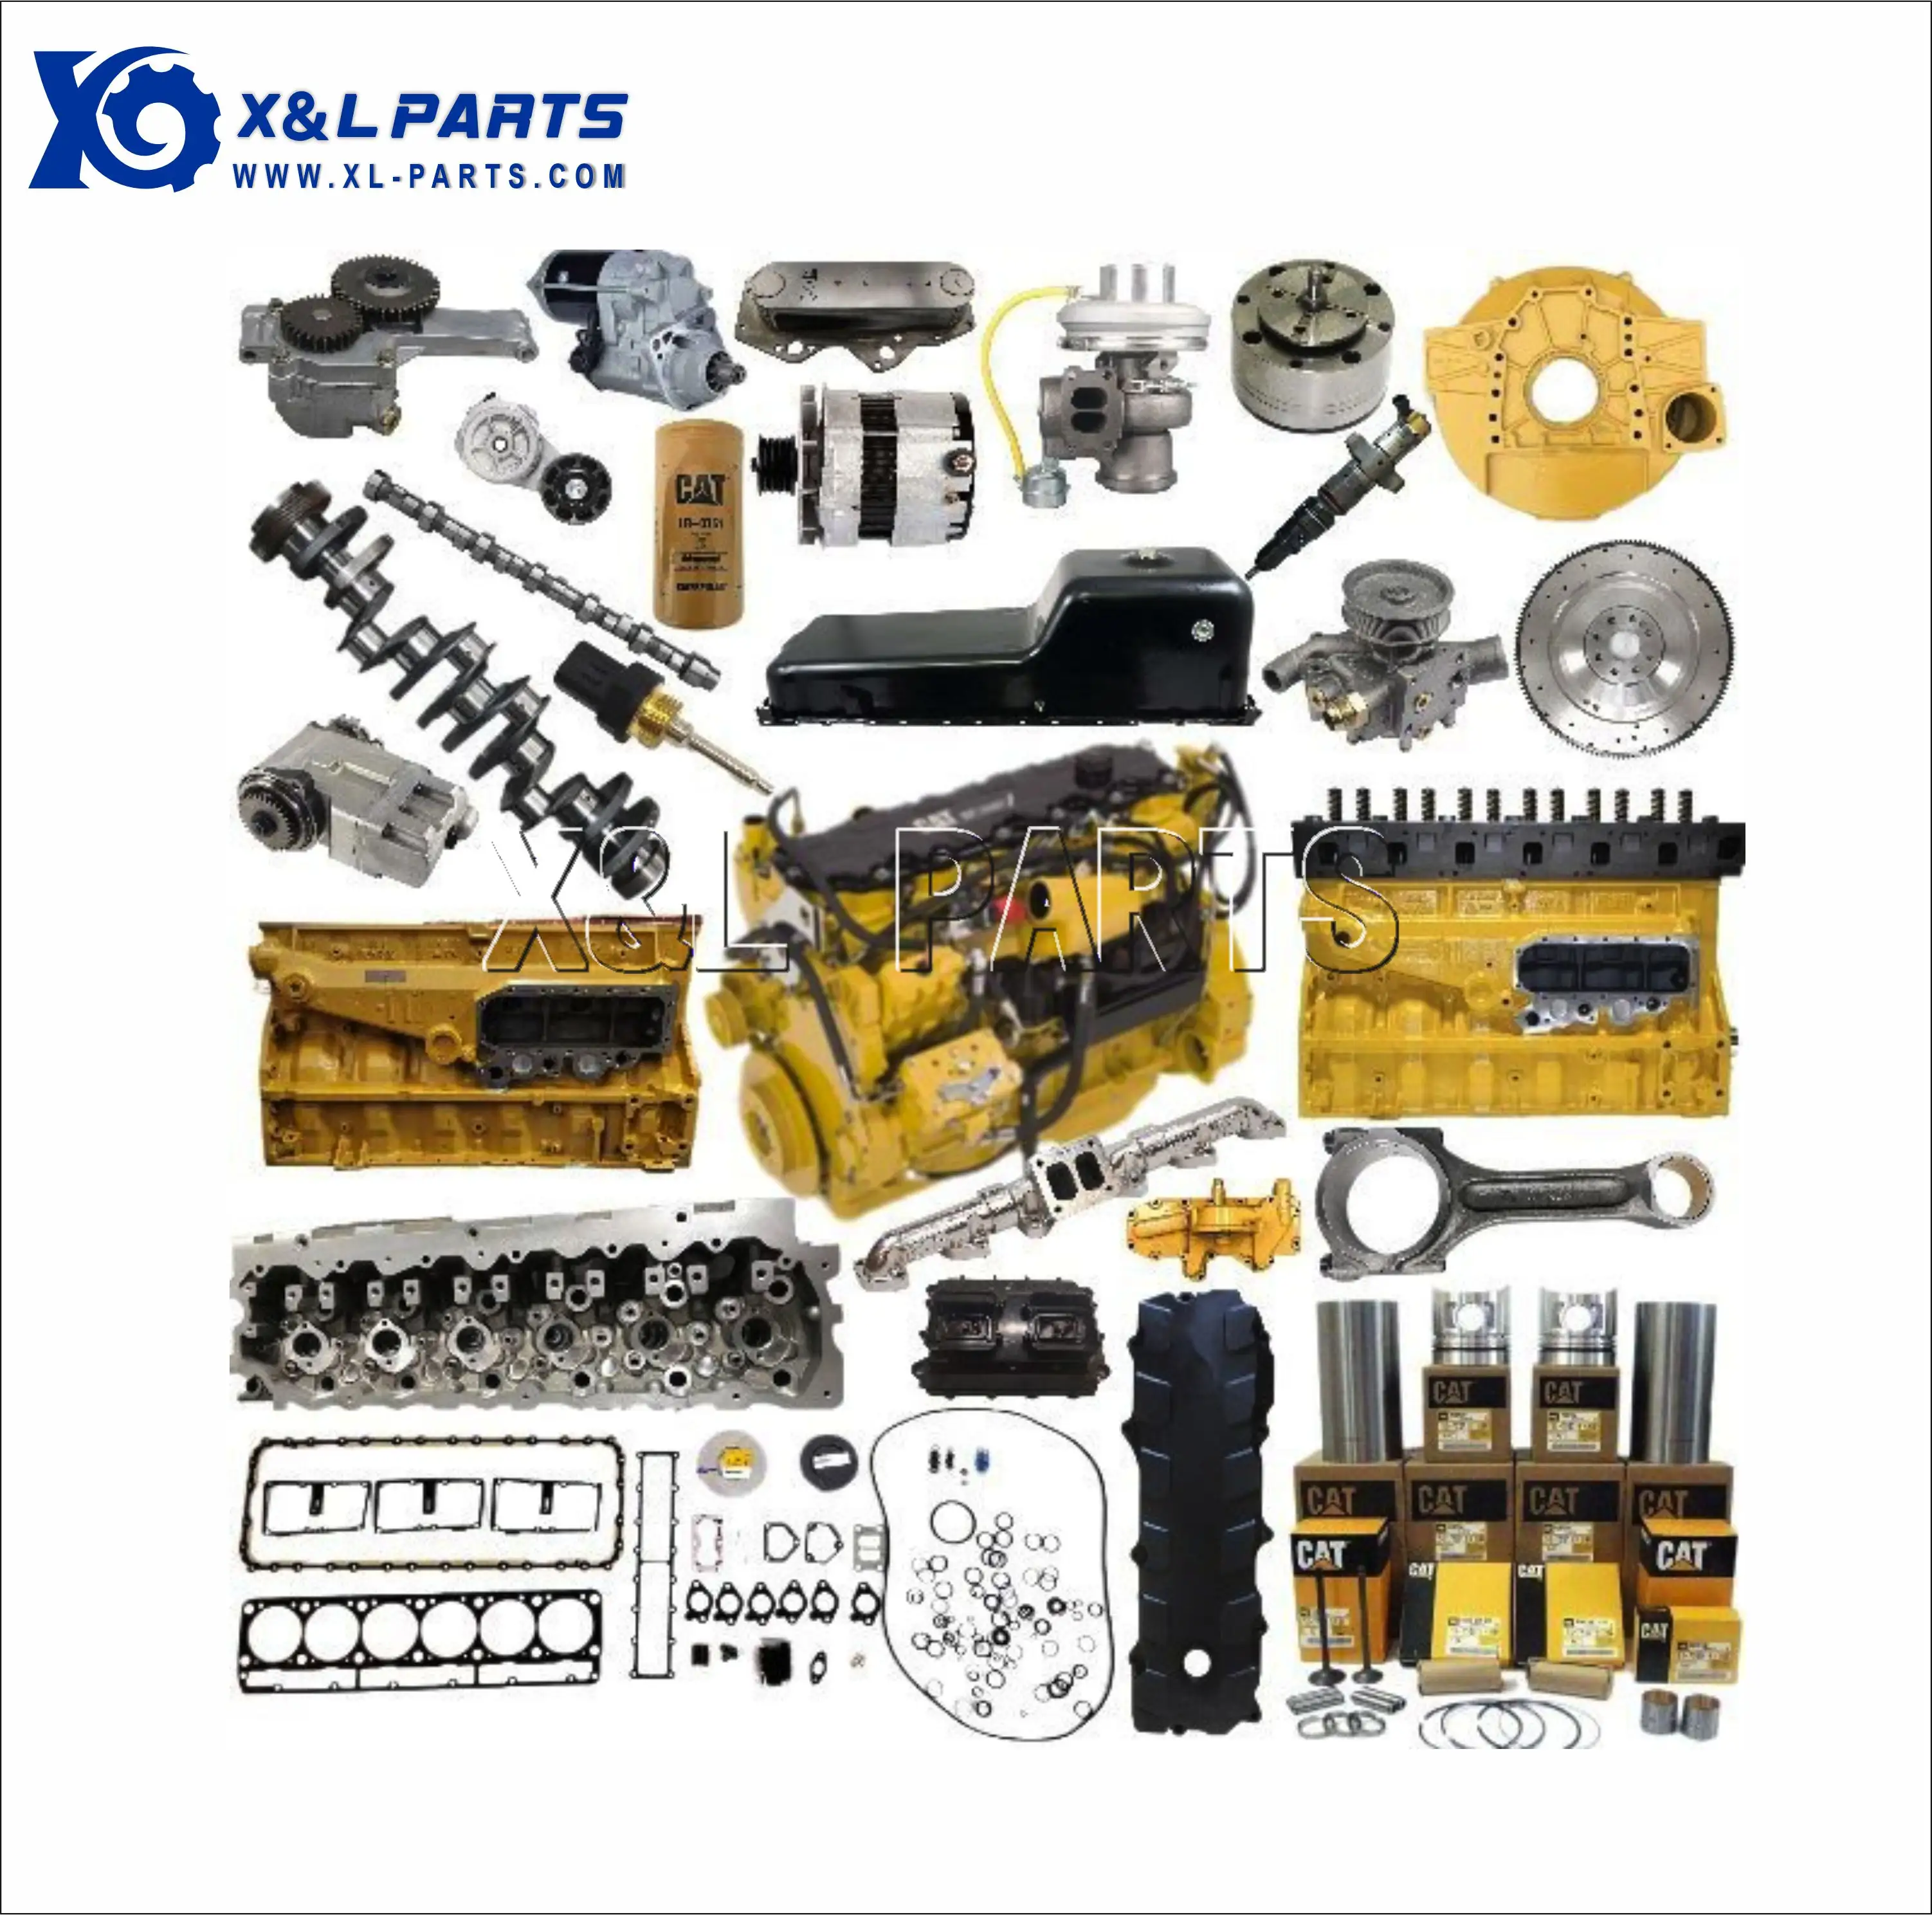 X & LCATエンジンスペアパーツ30663304 3306 C4.4 C6.4 C6.6 C7 C9 C10 C13 C15C18キャタピラー用オーバーホール修理キット